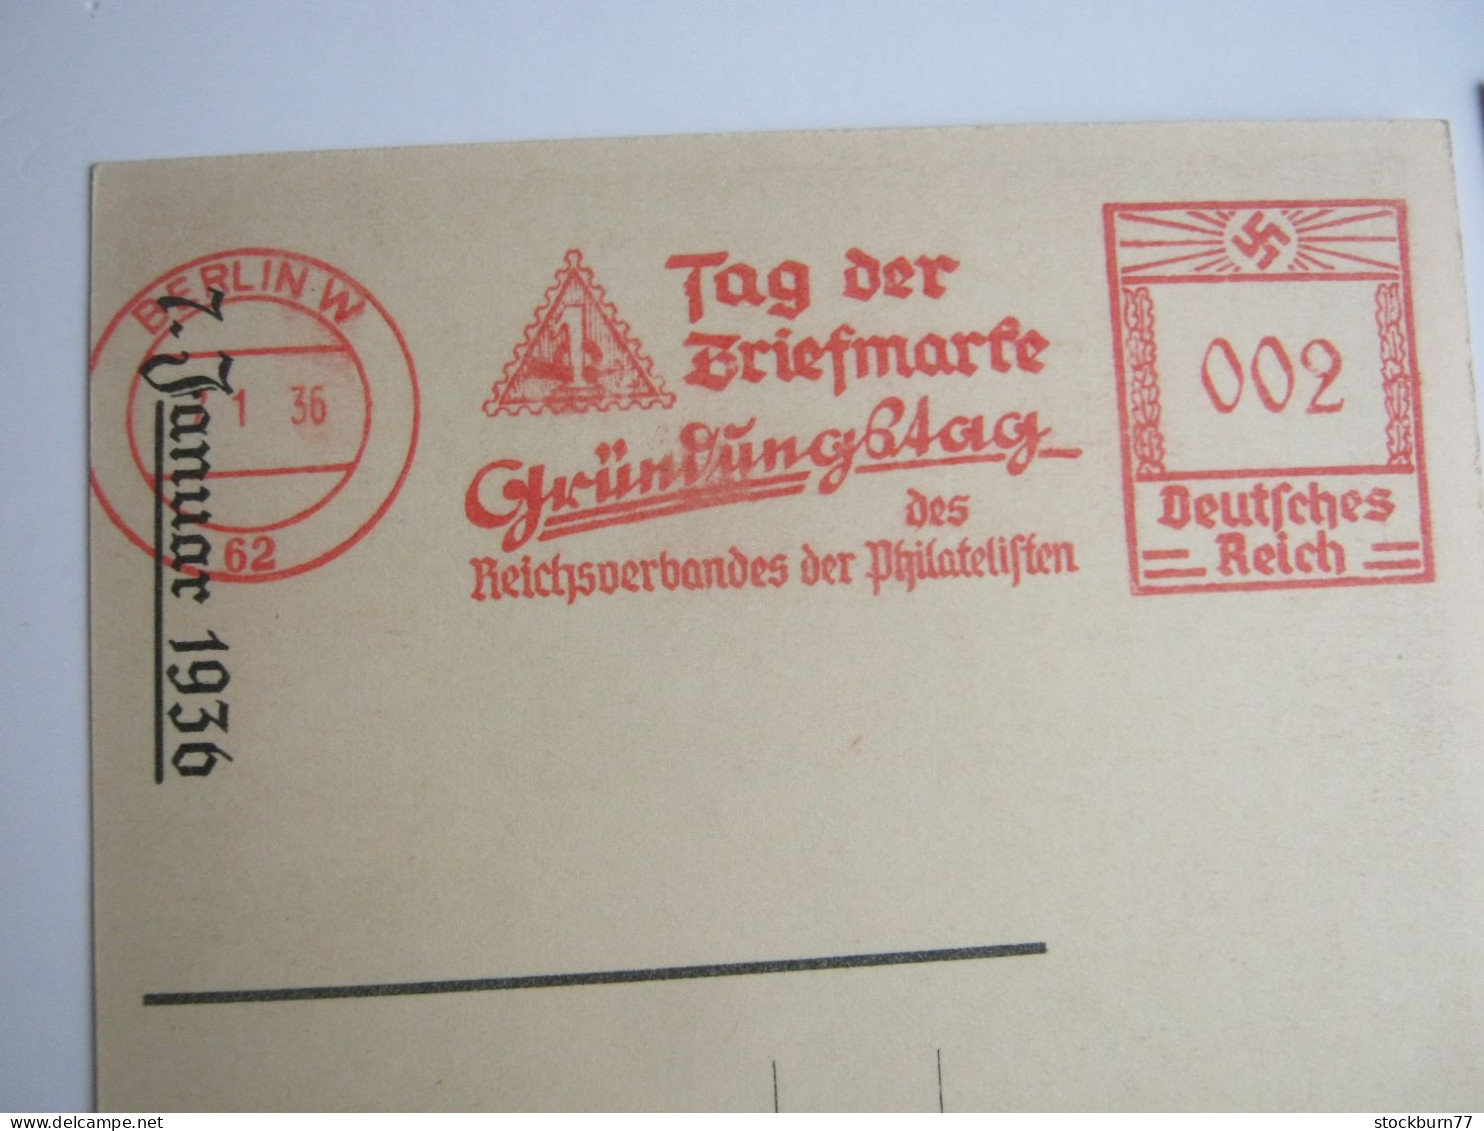 1936 , 2 Privatganzsachen " Tag Der Briefmarke " , 1 Mal Mit Freistempel - Interi Postali Privati